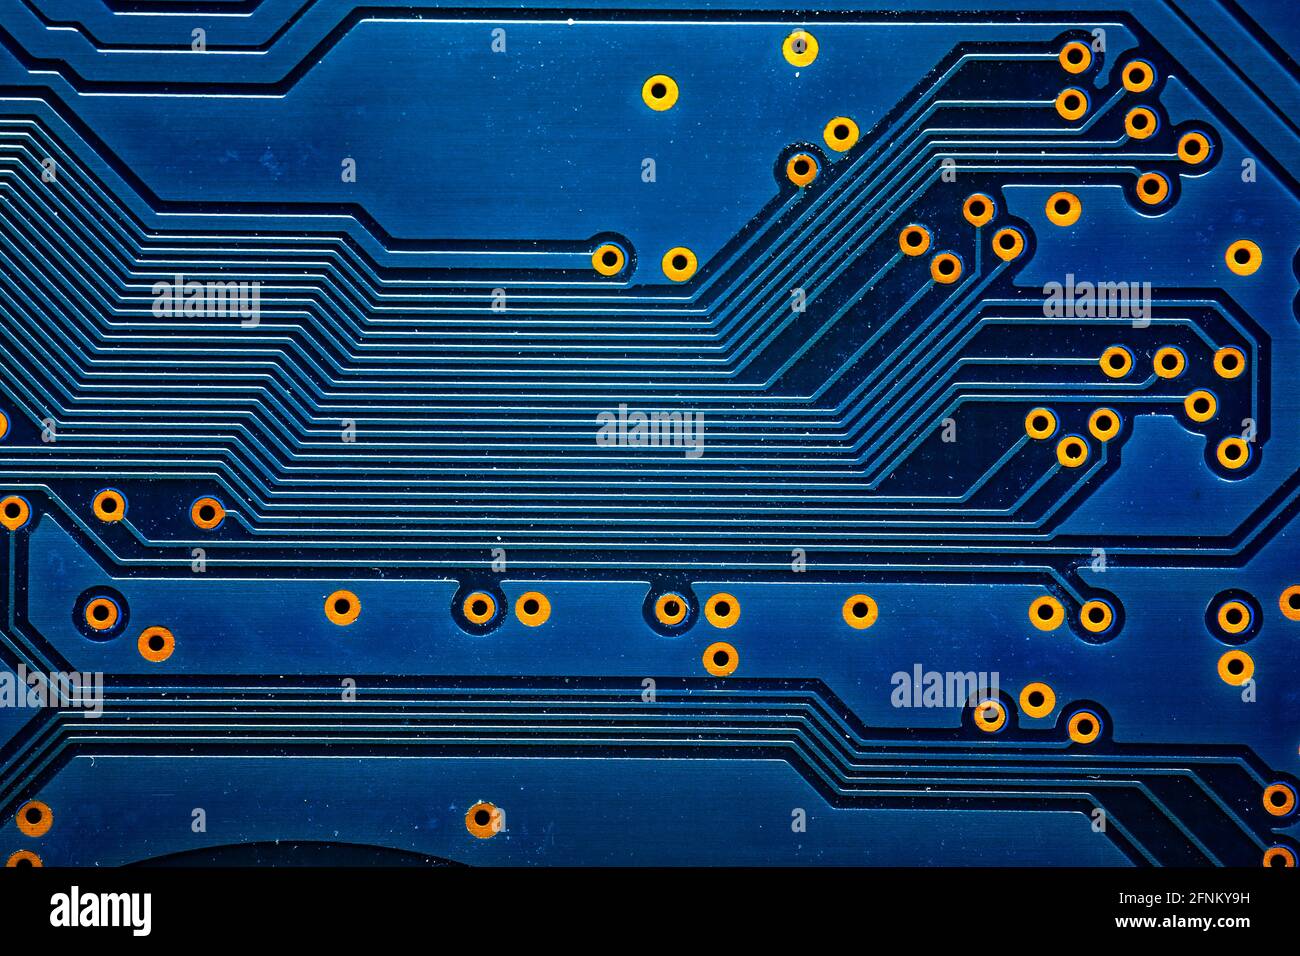 Un fragment élargi de couche conductrice métallique de la carte de circuit  électronique recouvert d'un vernis de protection bleu, avec des contacts  plaqués or Photo Stock - Alamy